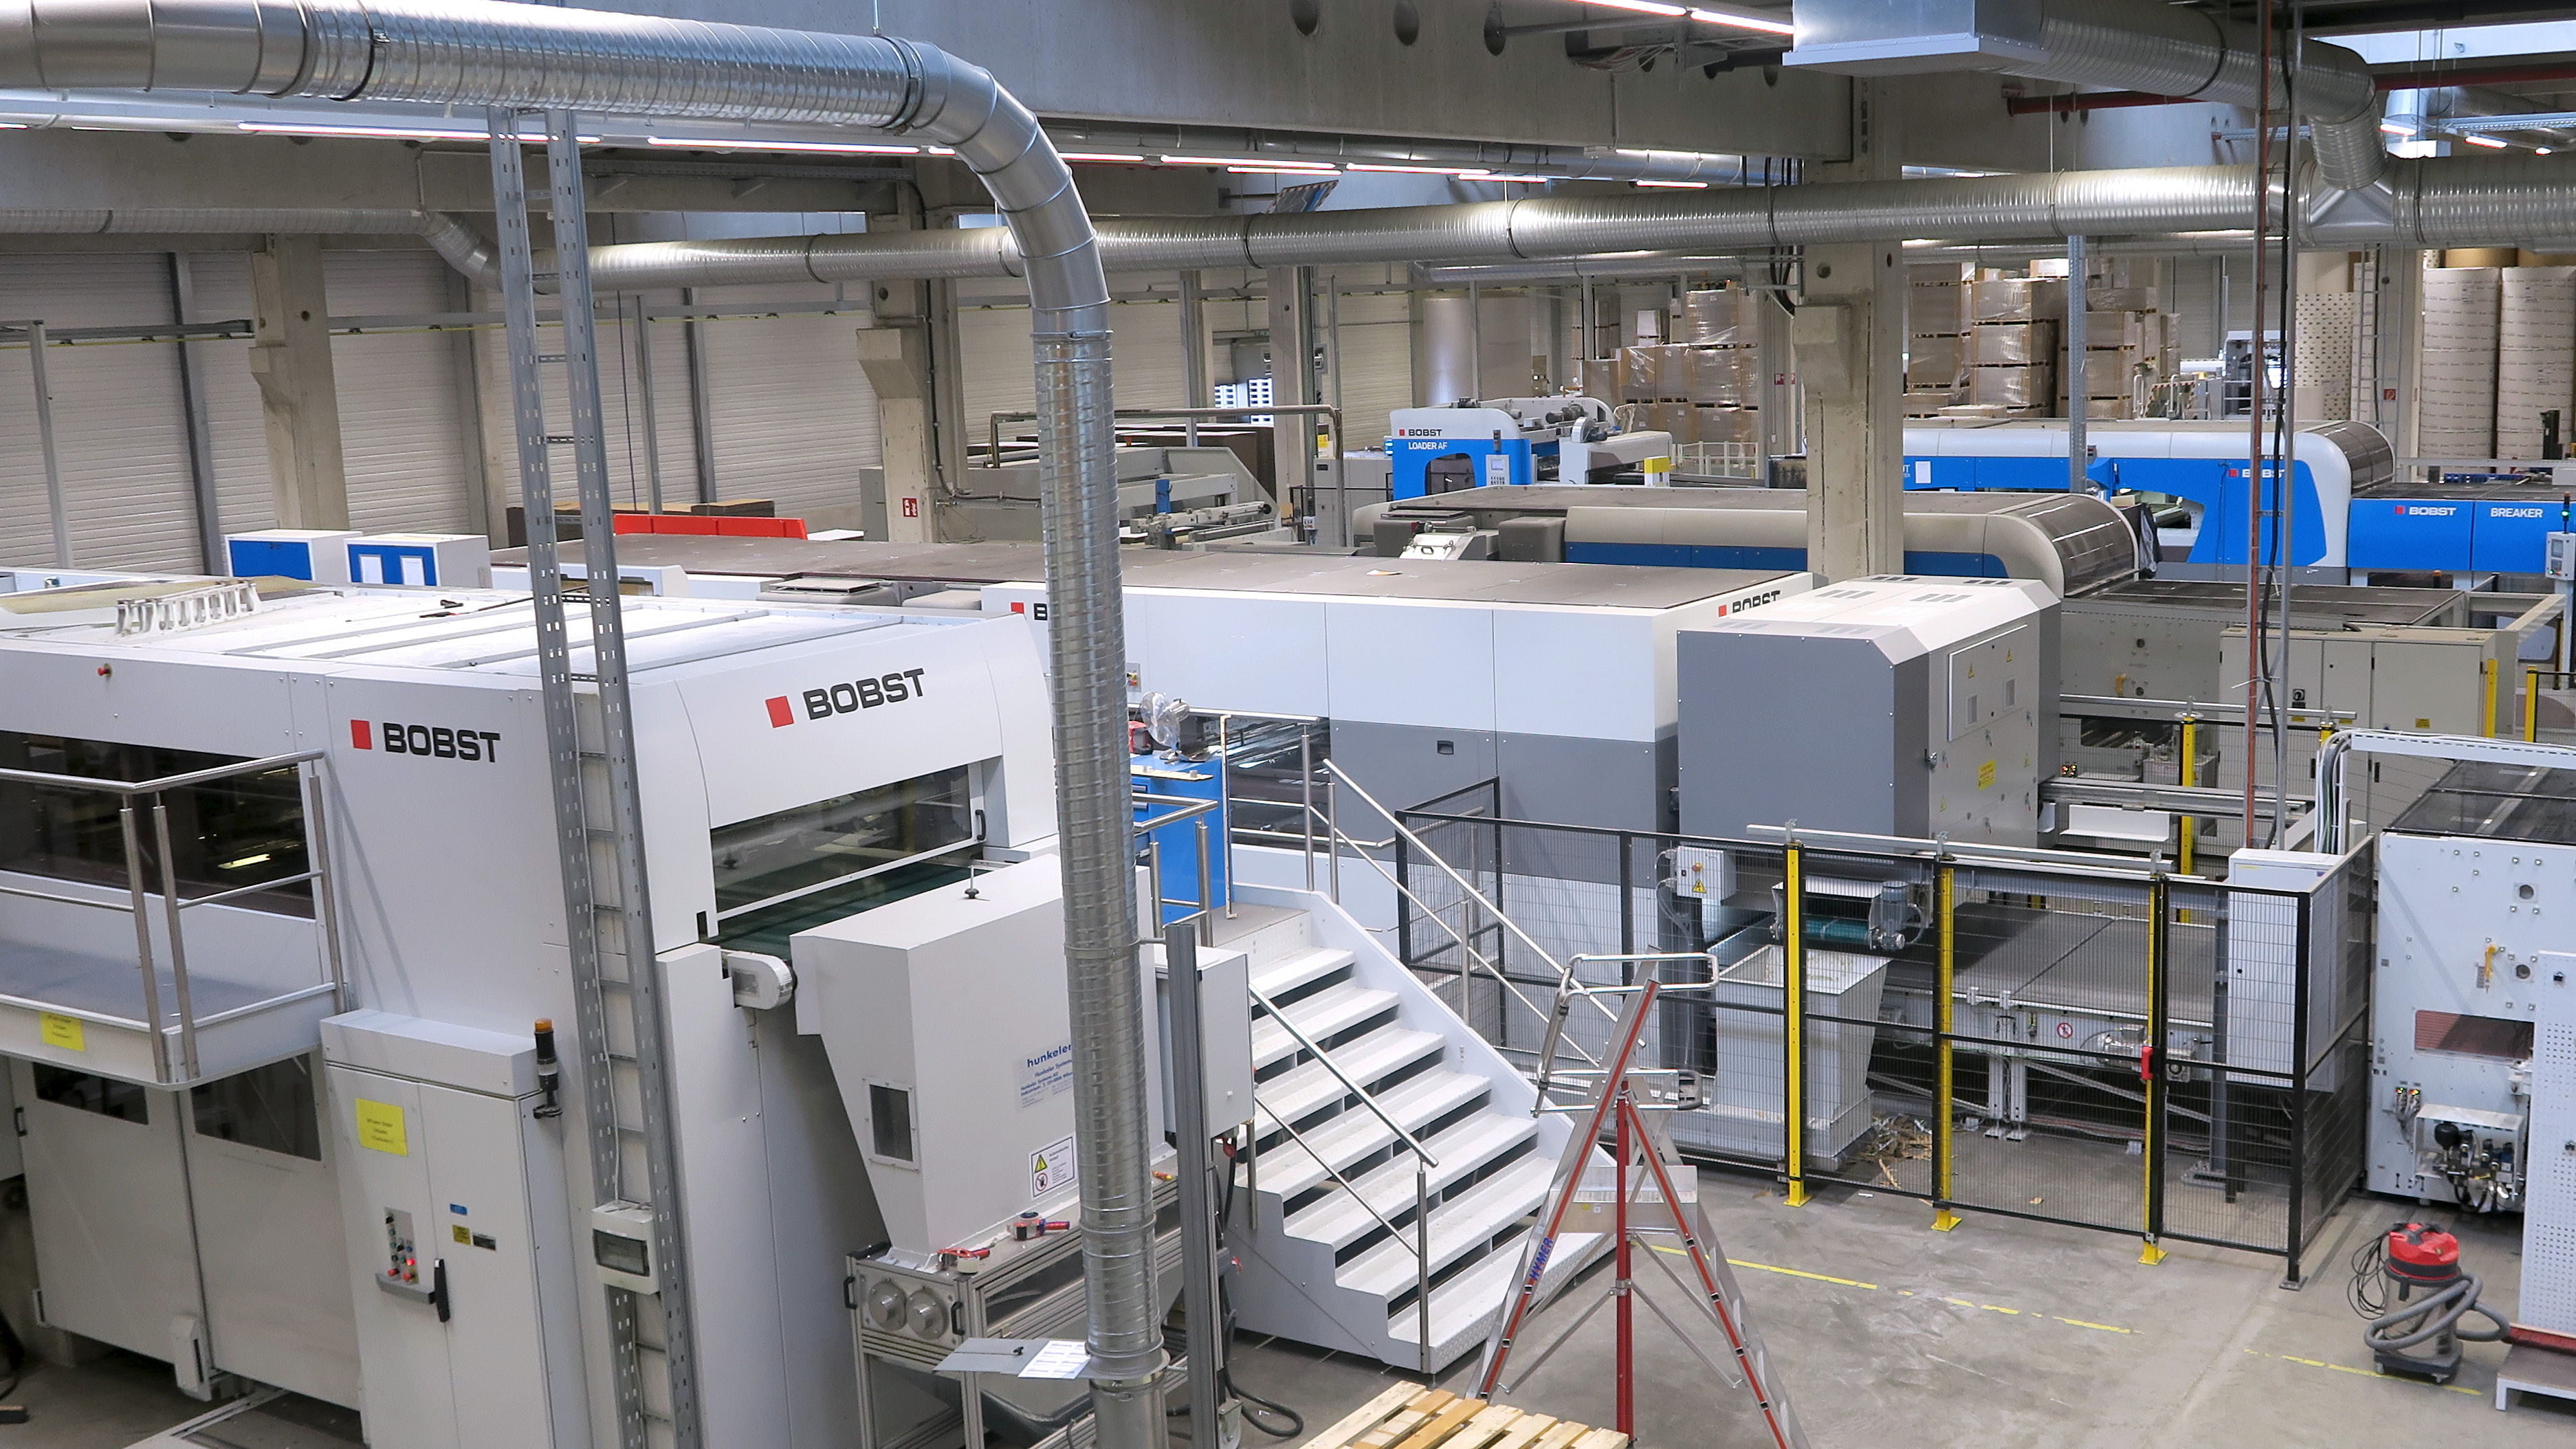 L’installation de production de packit! est équipée d’une gamme complète de presses à découper BOBST